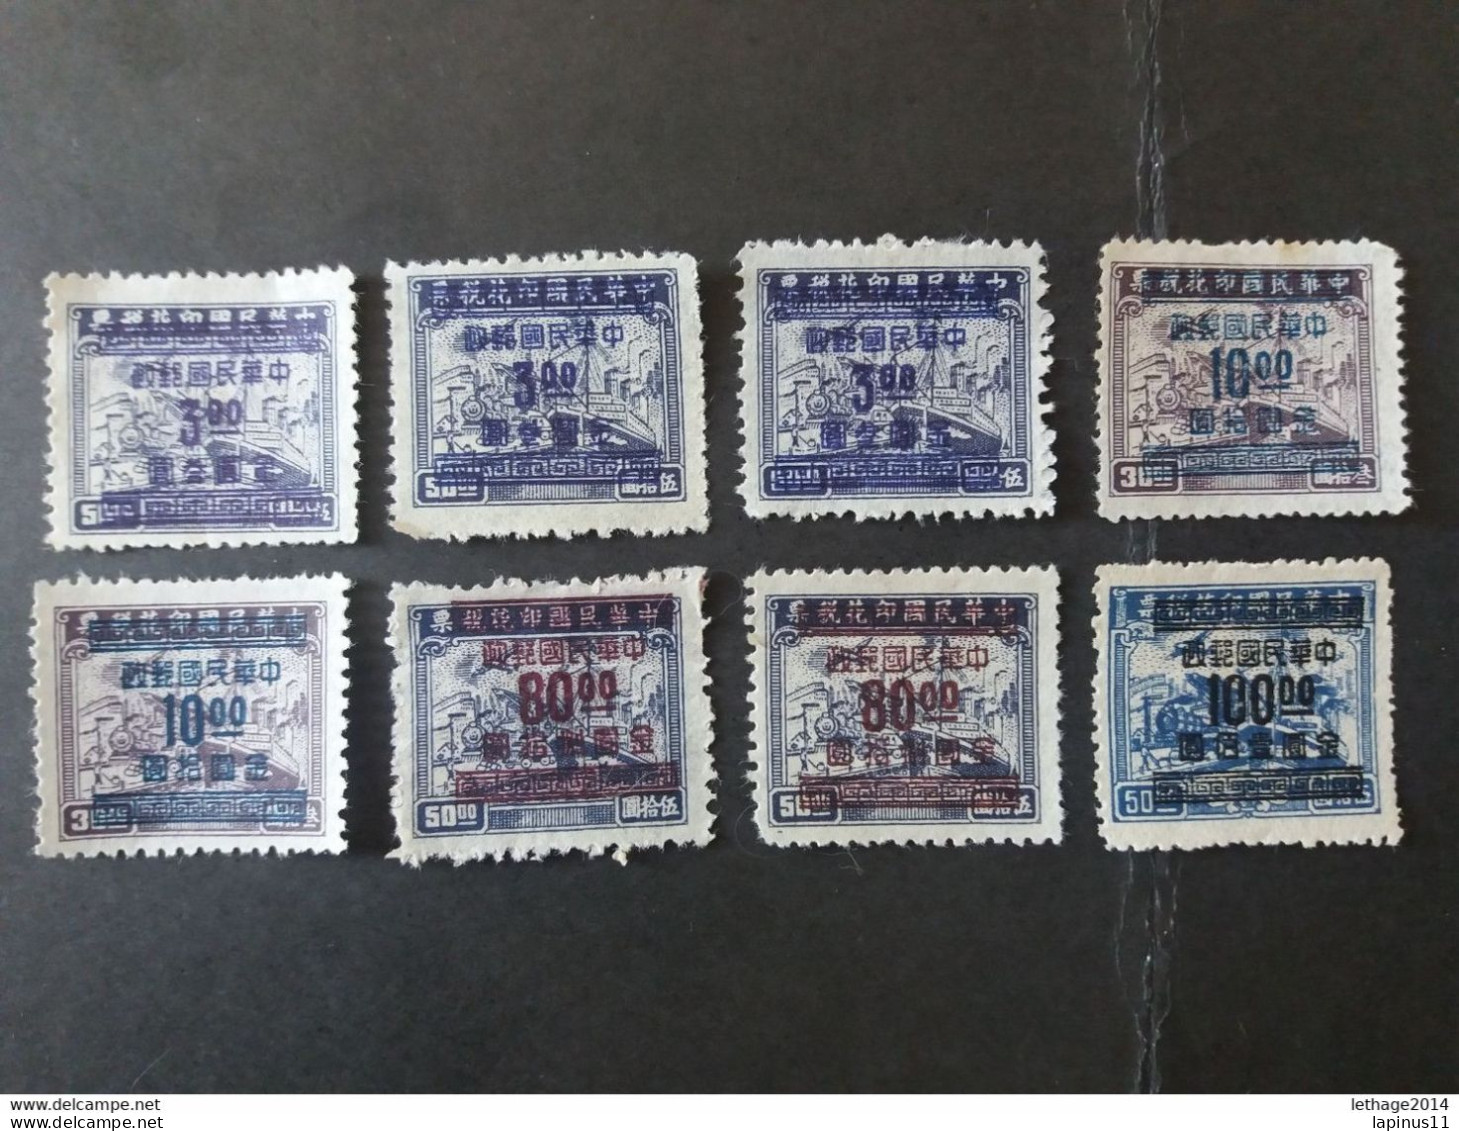 CHINE 中國 CHINA 1949 Revenue Stamps Surcharged - 1912-1949 République